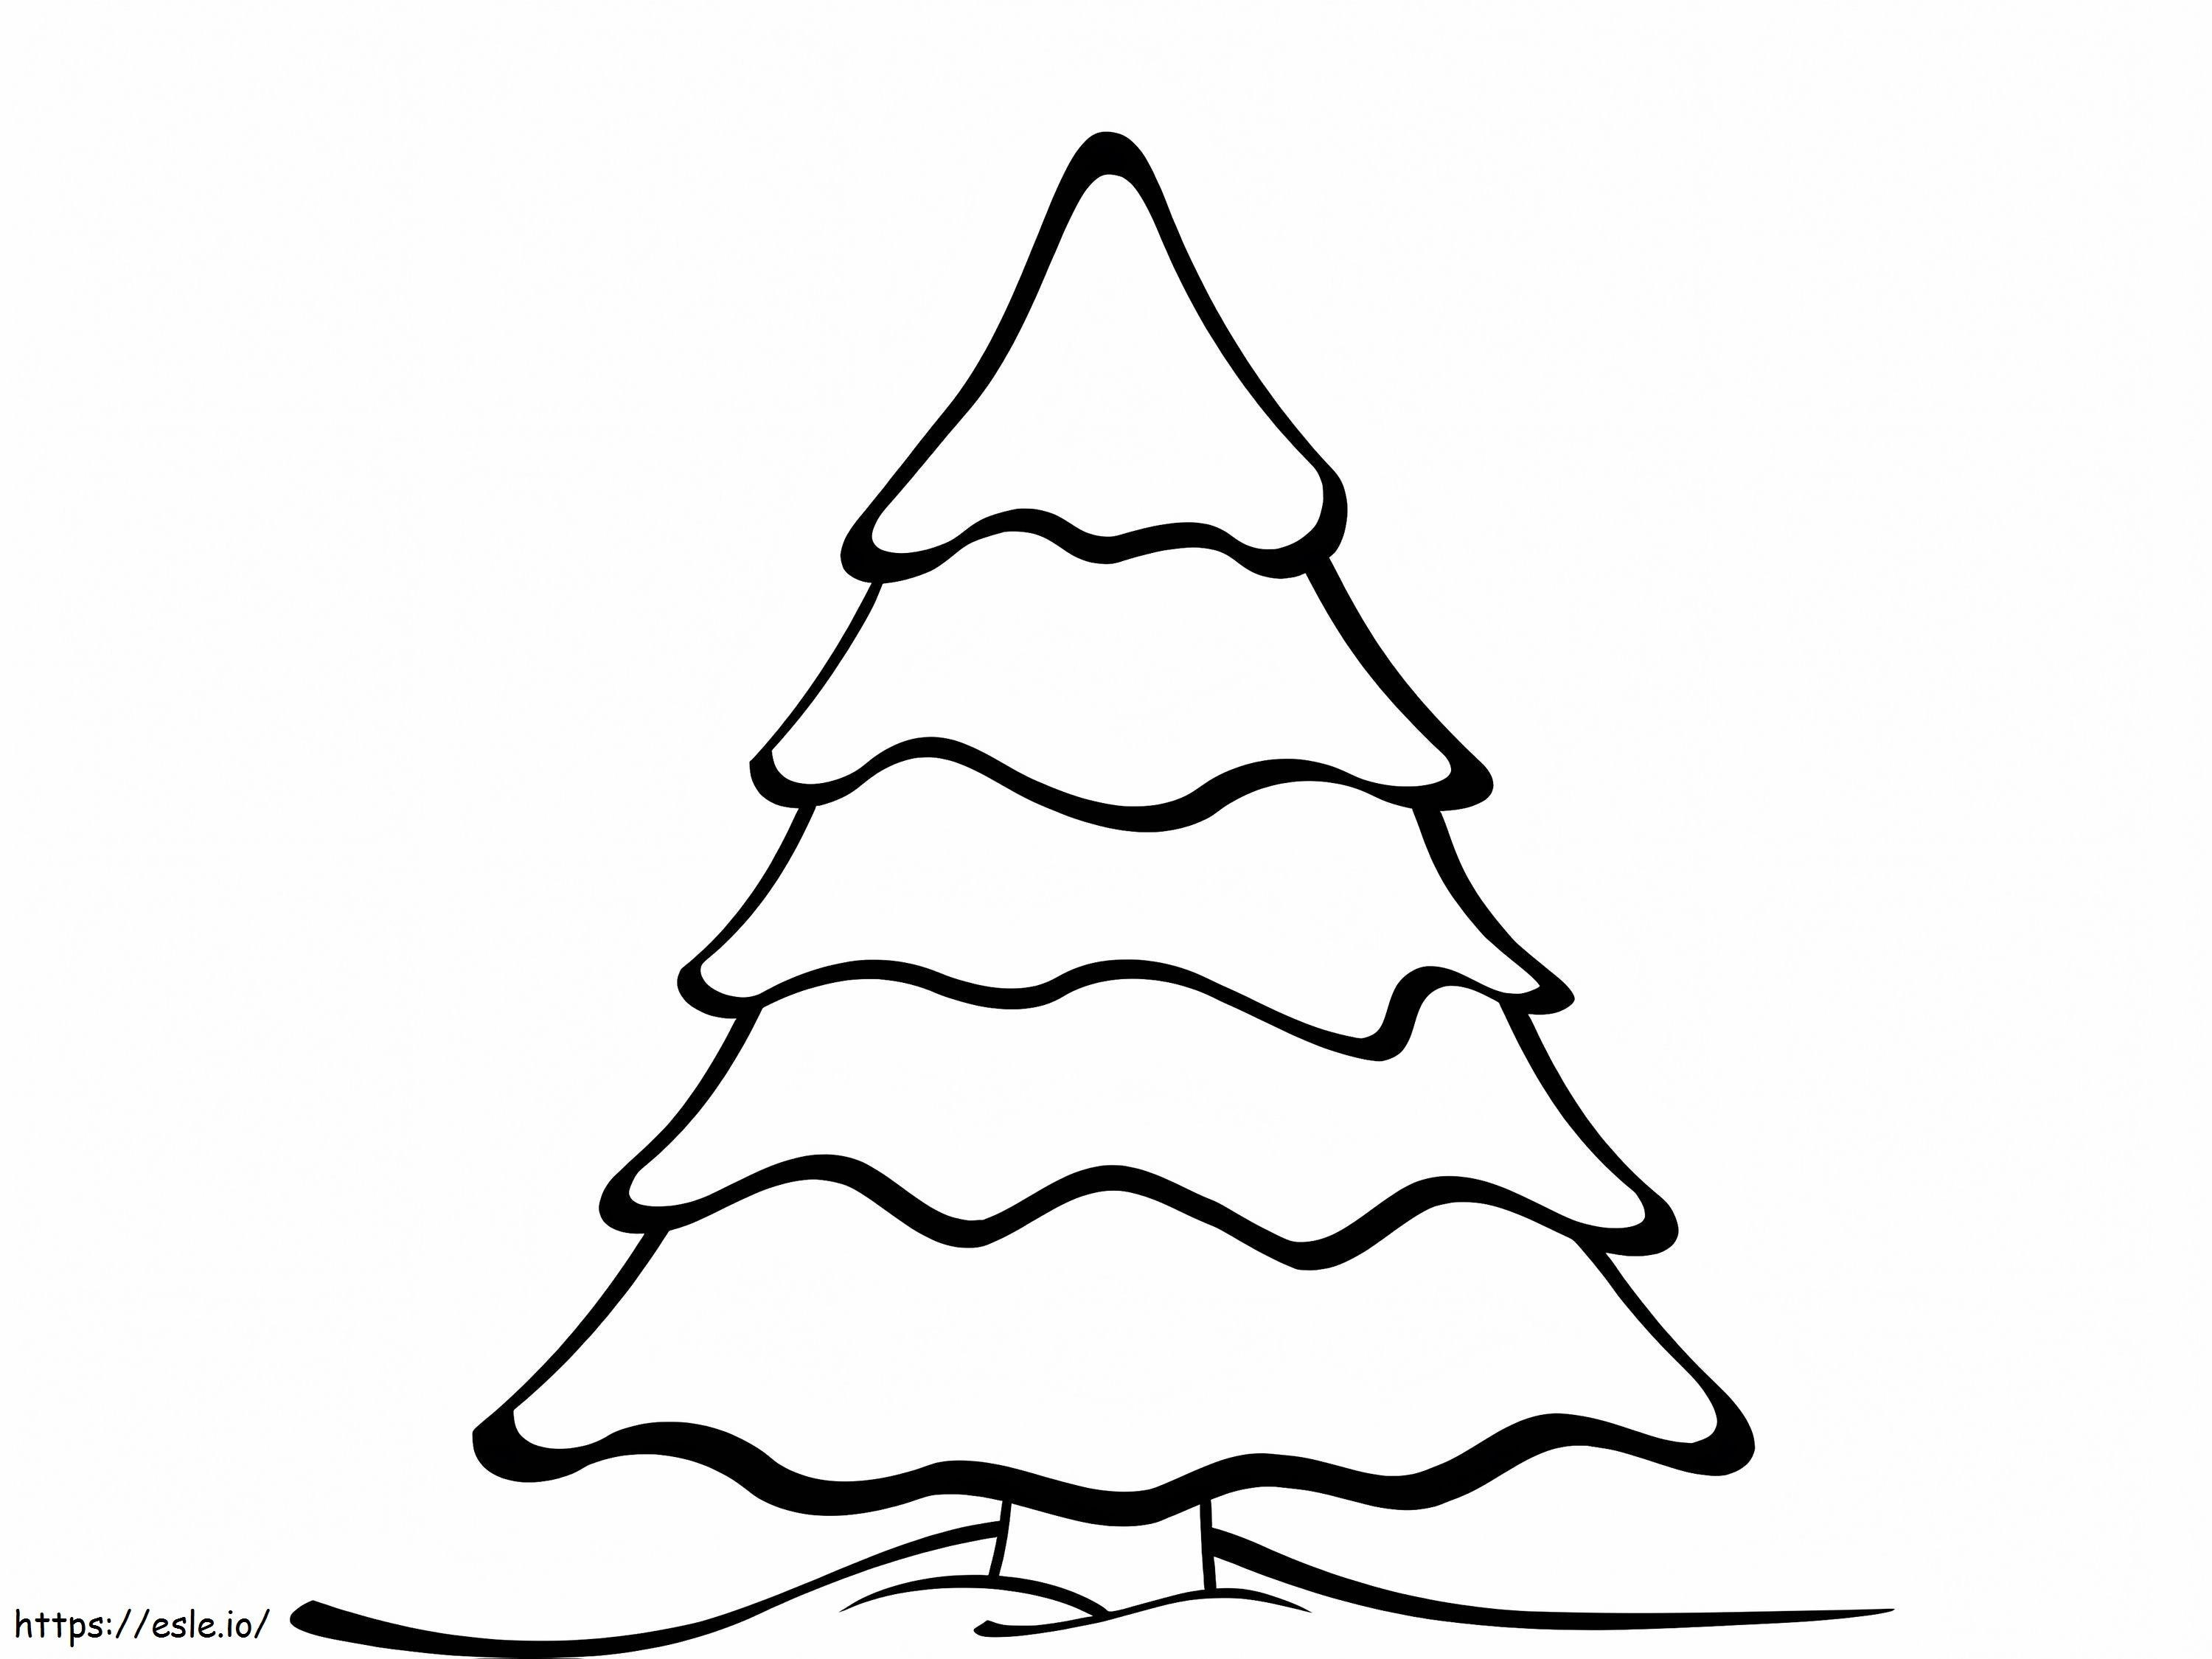 Disegno dell'albero di Natale da colorare